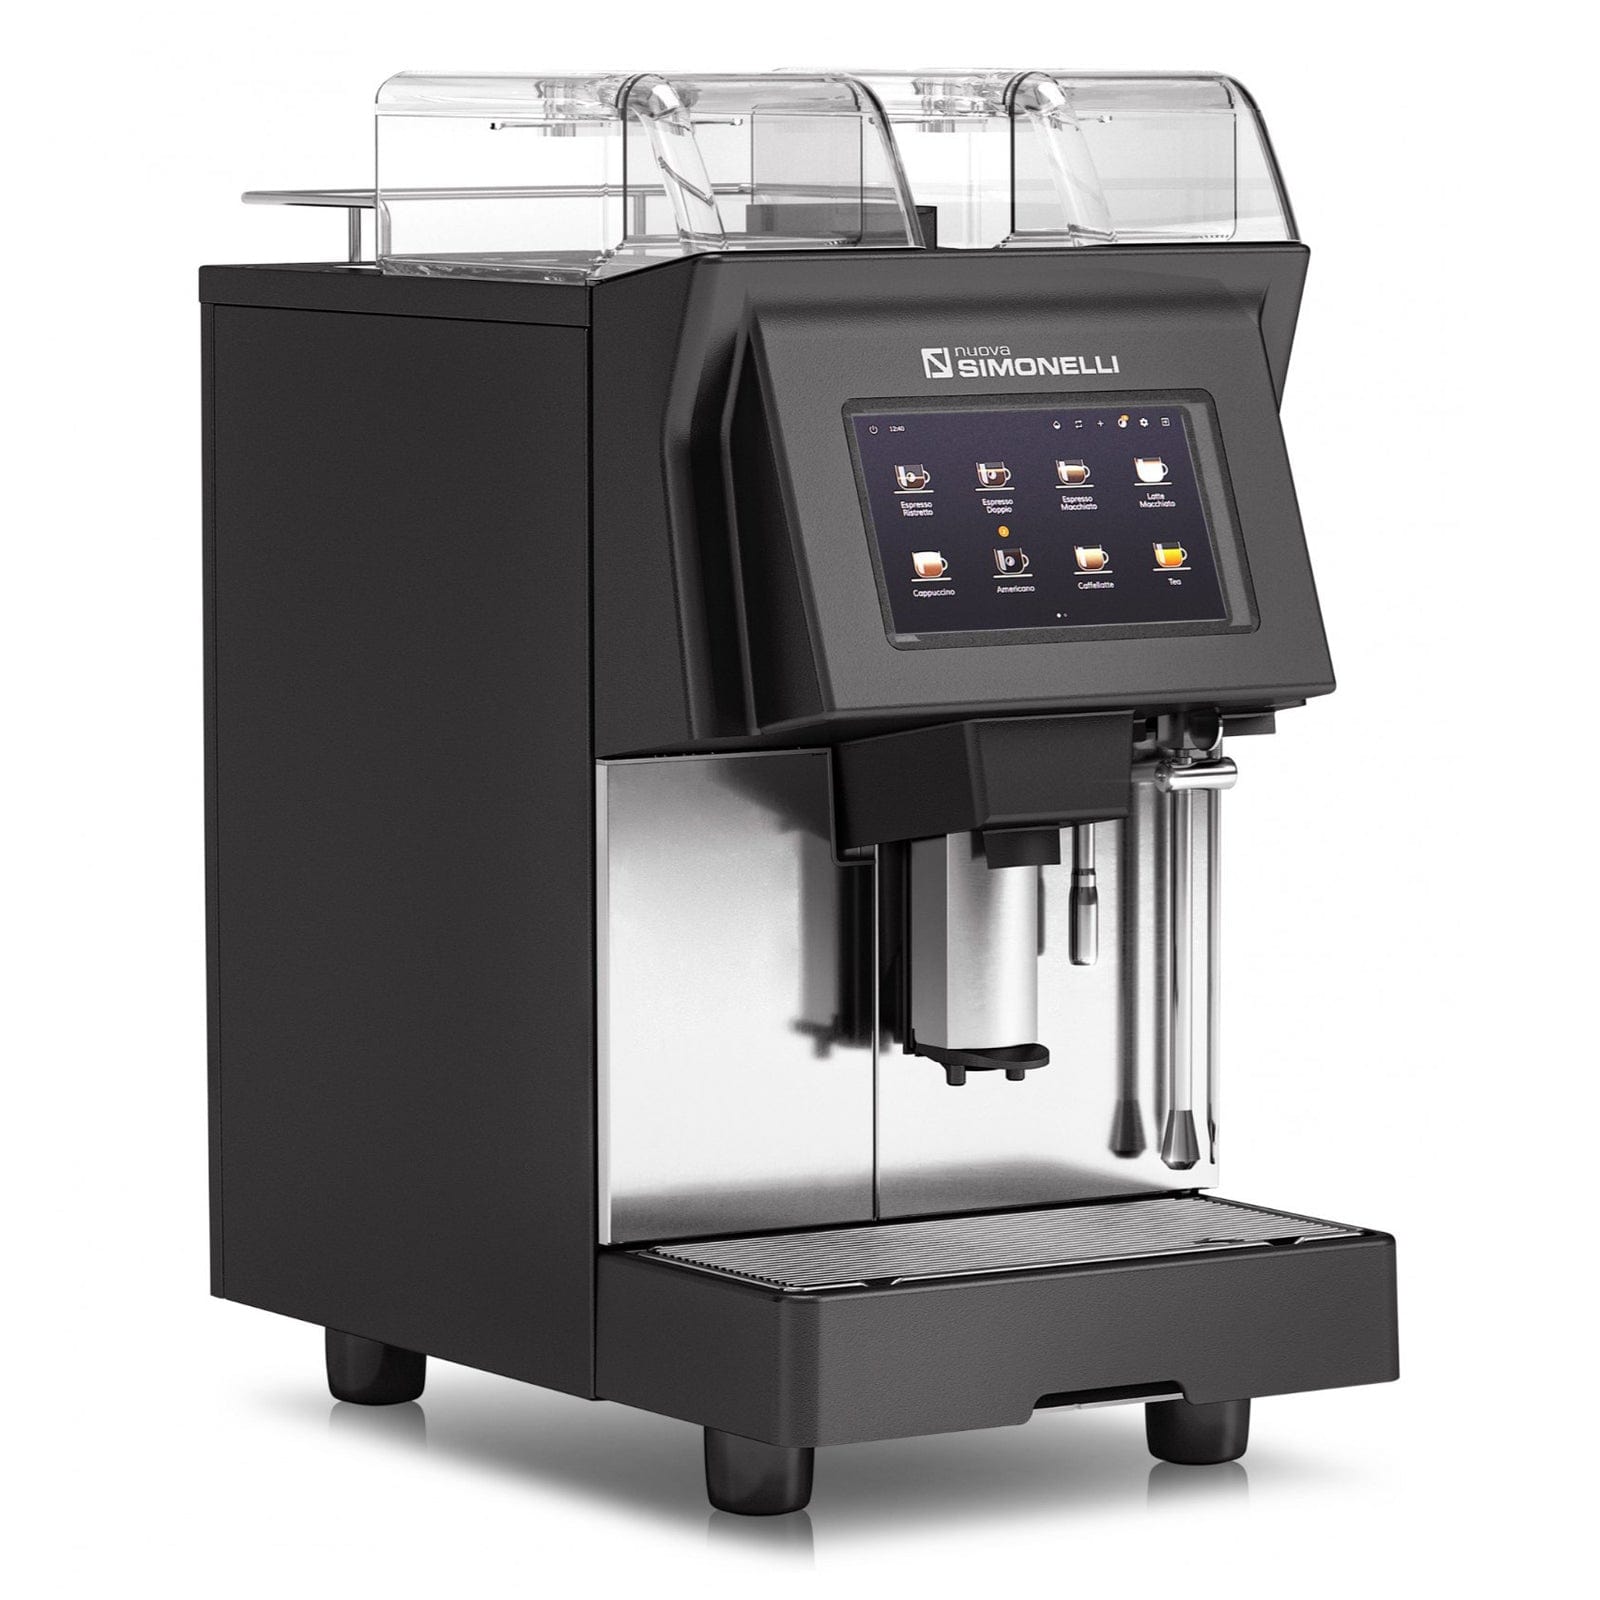 Nuova Simonelli Prontobar Touch Super Automatic Espresso Machine